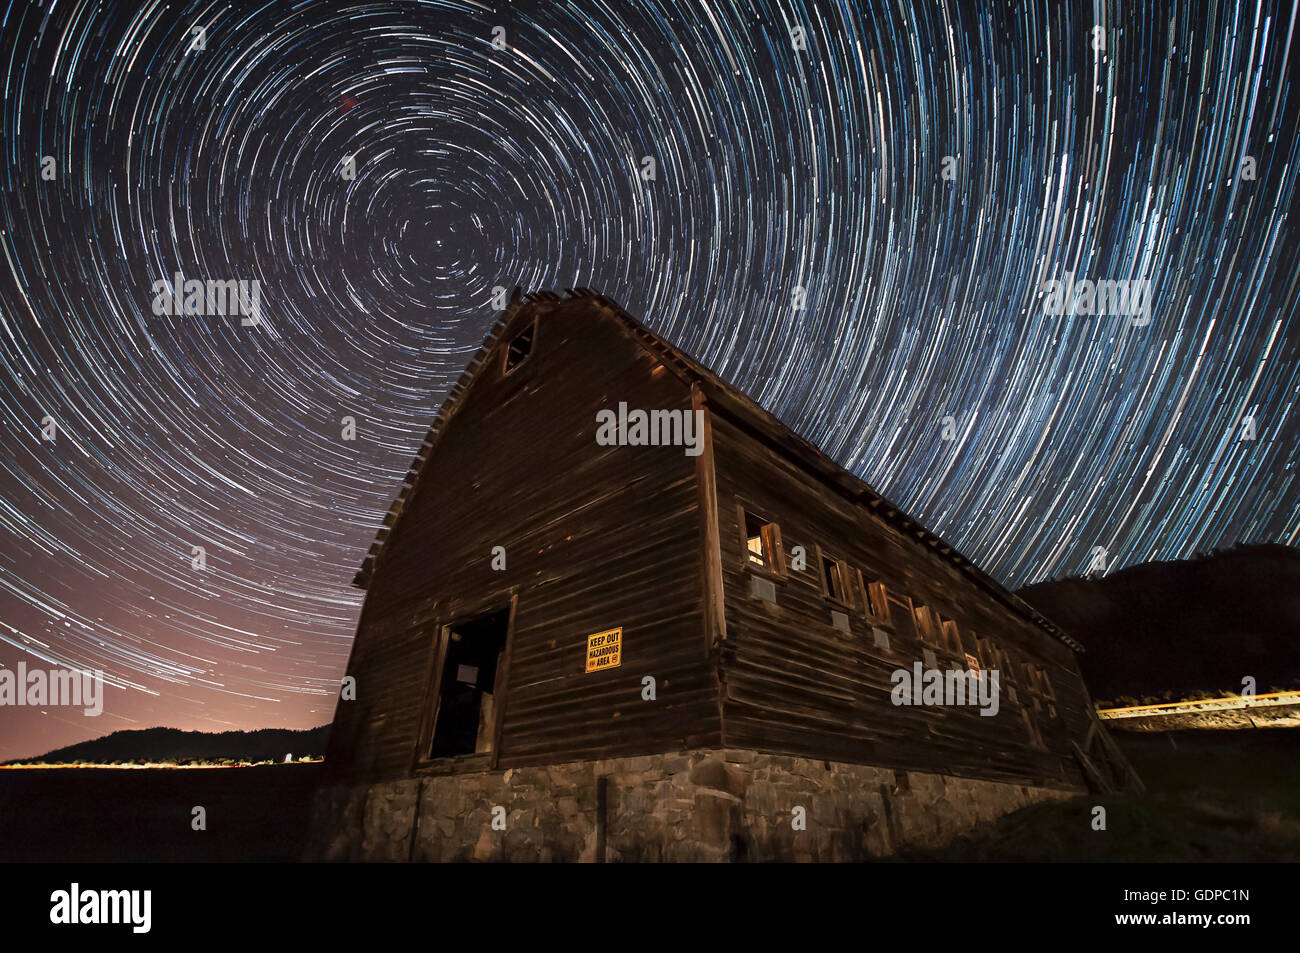 La larga exposición de las estrellas en el cielo nocturno, Haynes Rancho Proyecto de Conservación de Edificios, Oliver, British Columbia, Canadá Foto de stock